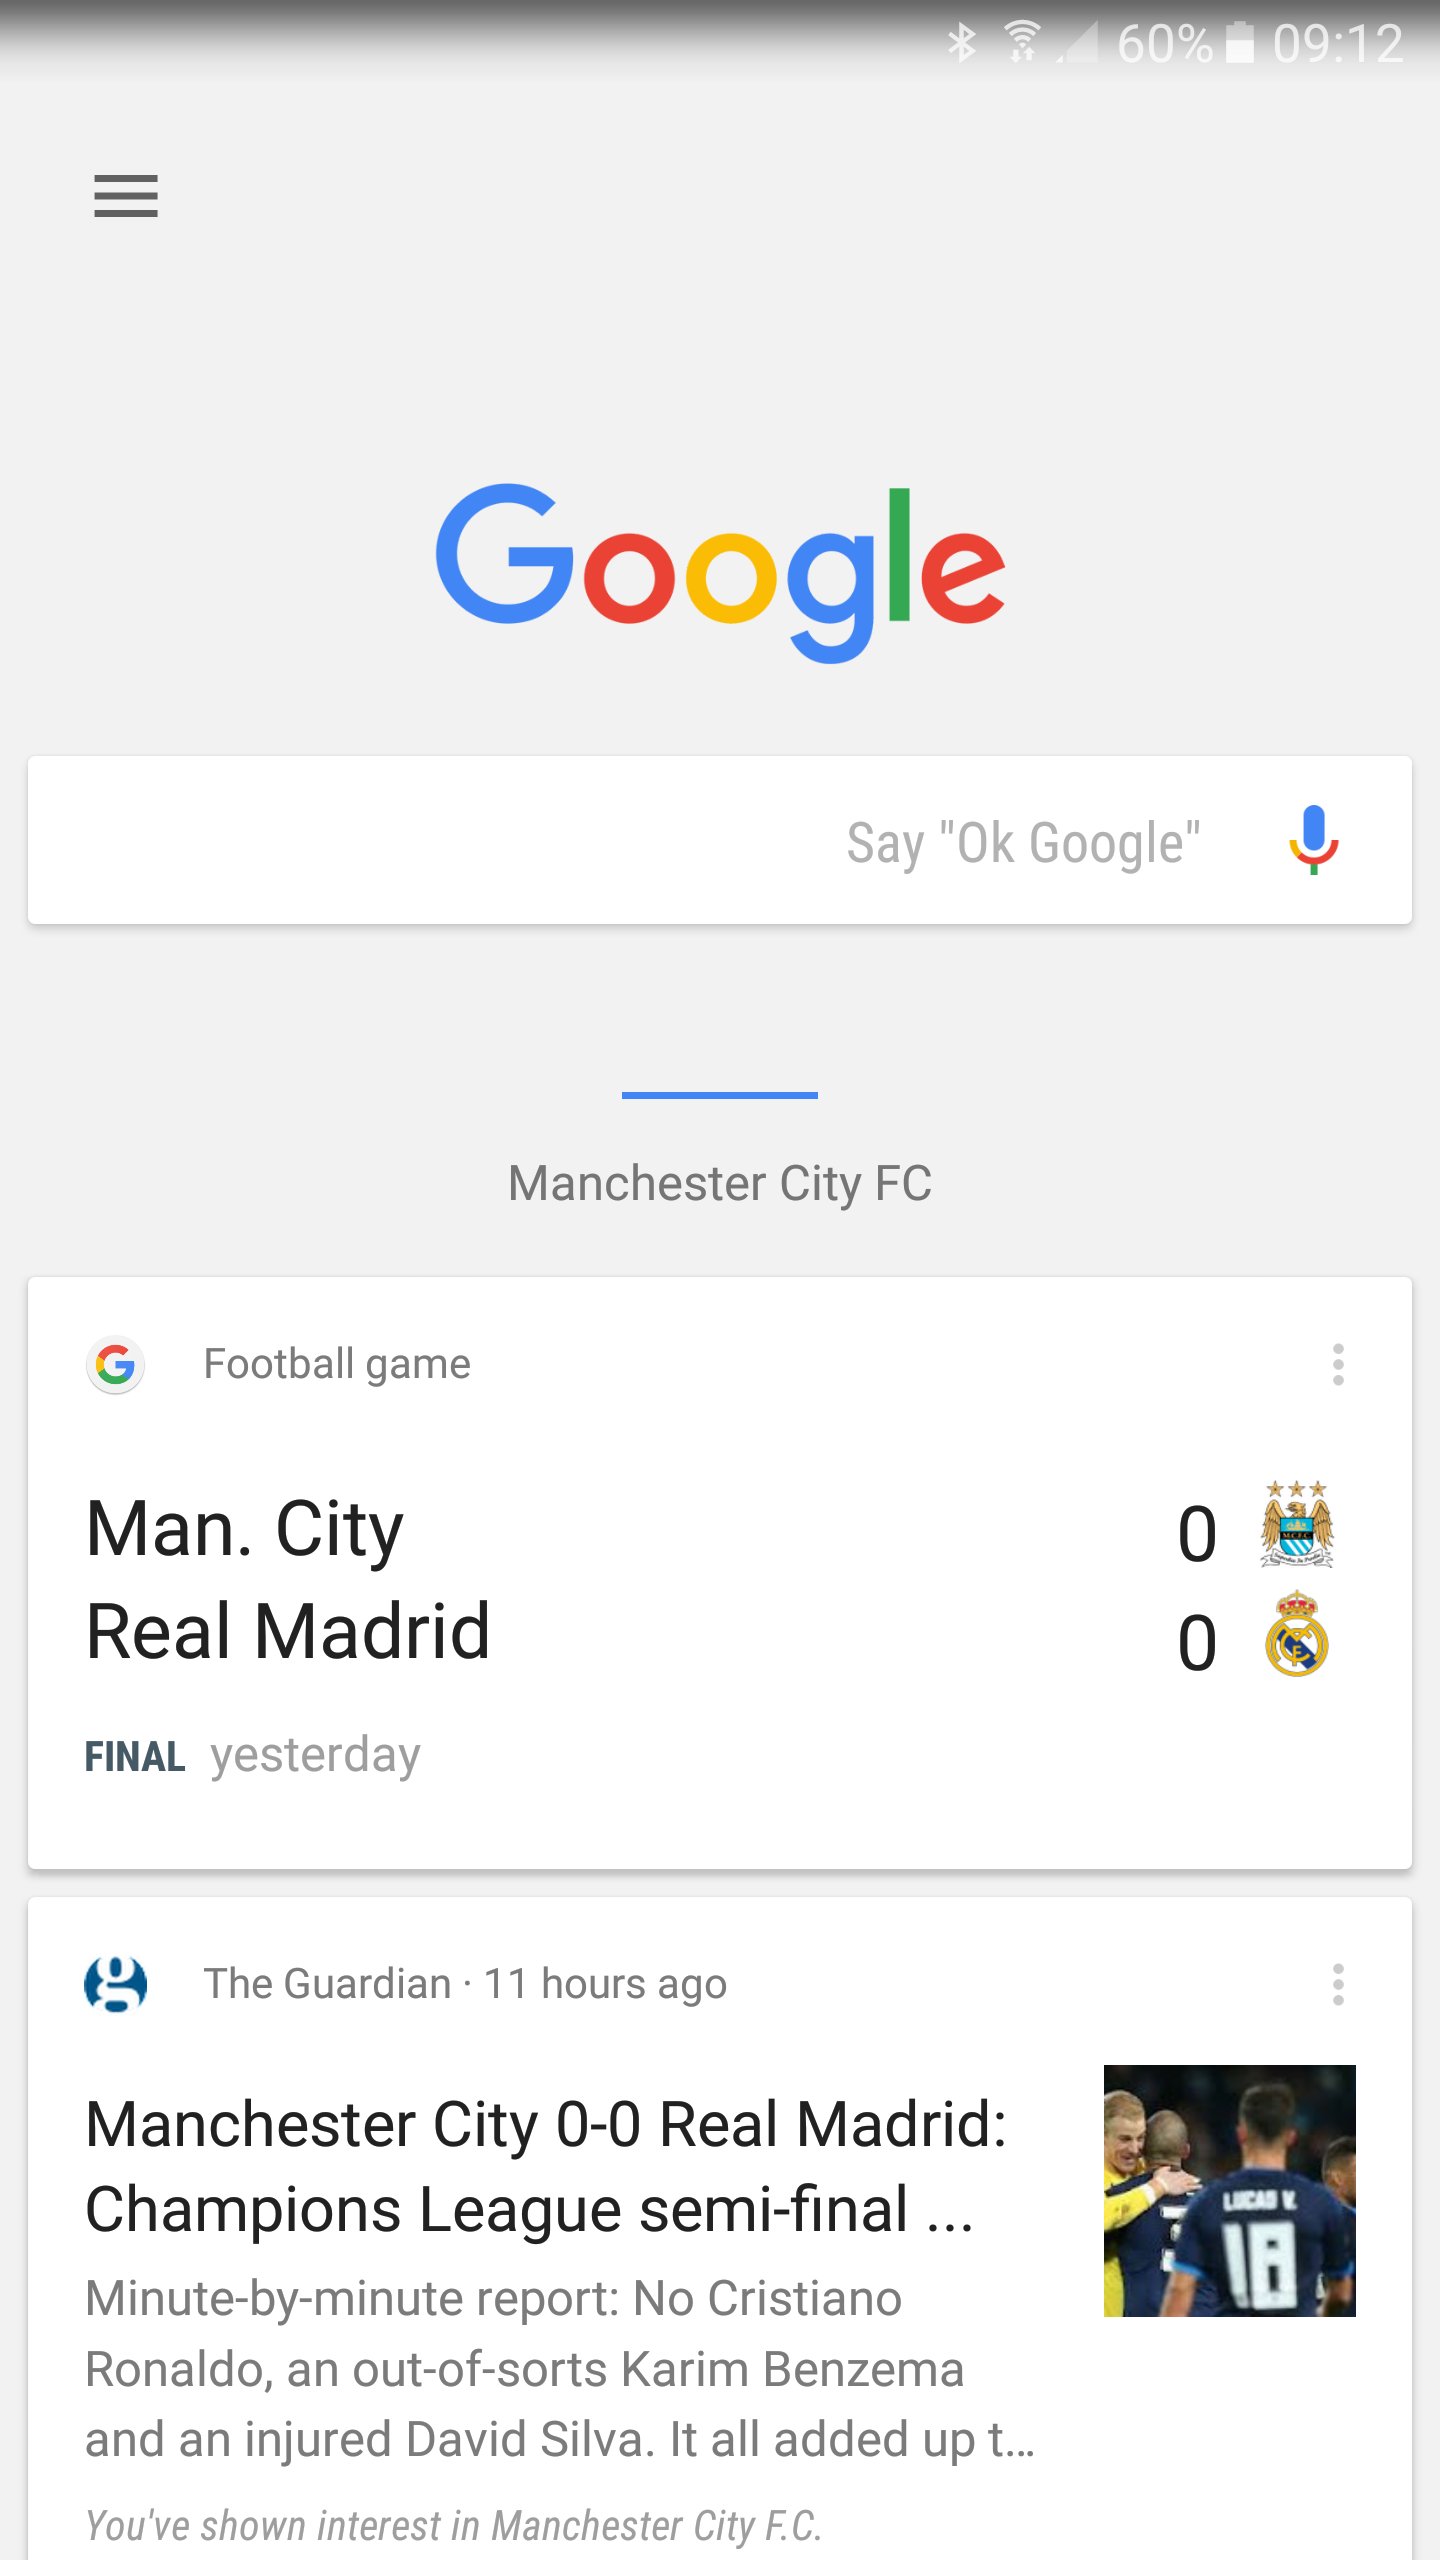 Hvordan bruker jeg Google nå?